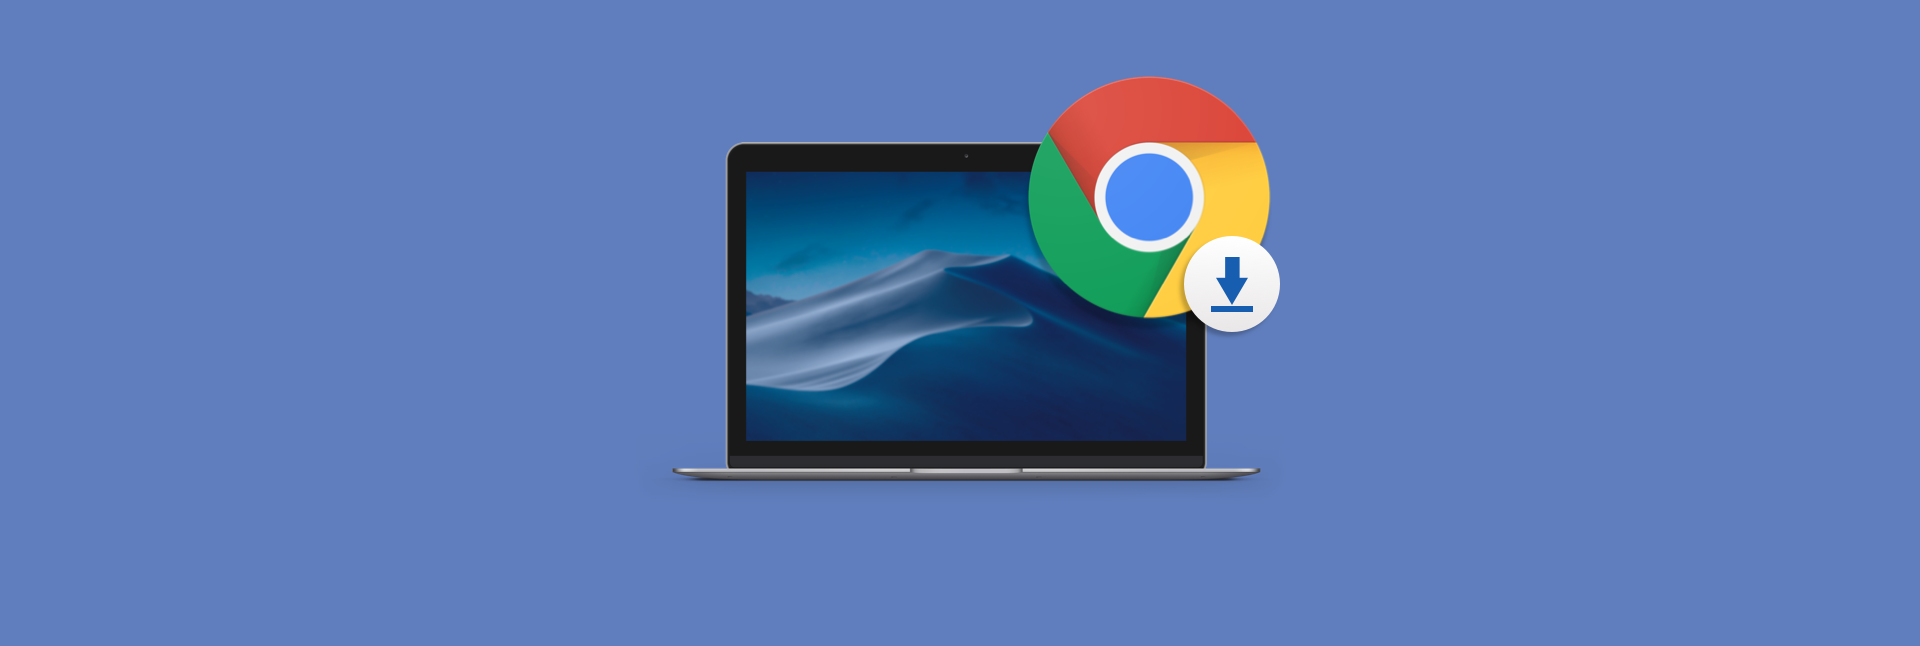 google chrome for mac probook